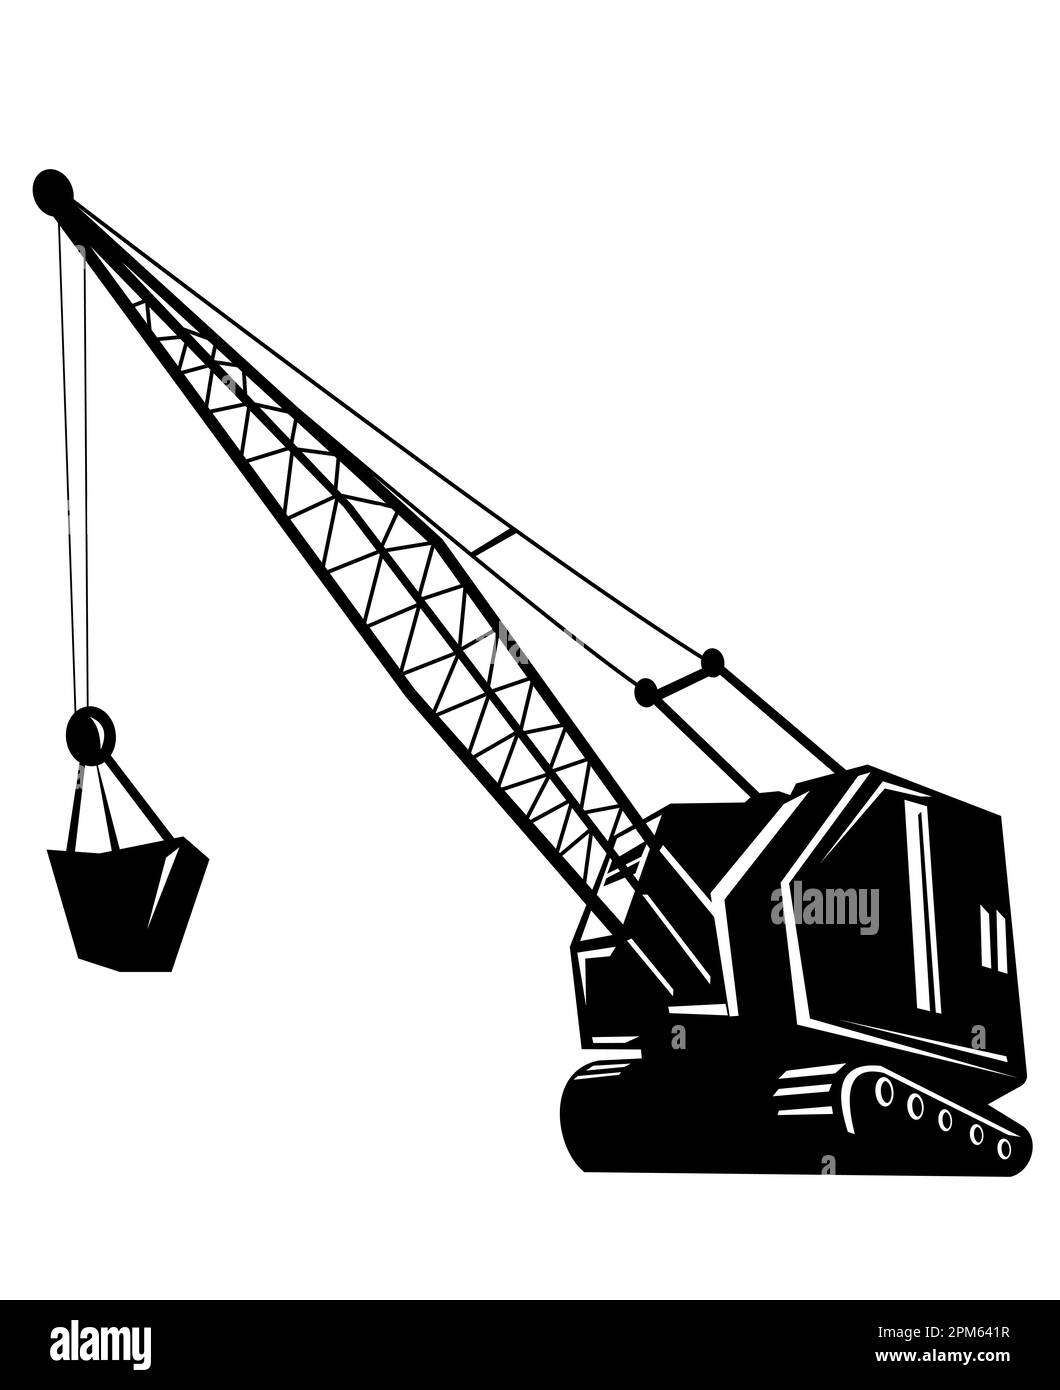 Darstellung eines Bergbaukrans oder Bergbauaufzugs mit Ausleger von der Seite des niedrigen Winkels auf isoliertem Hintergrund in schwarz-weiß Holzschnitt im Retro-Stil Stockfoto